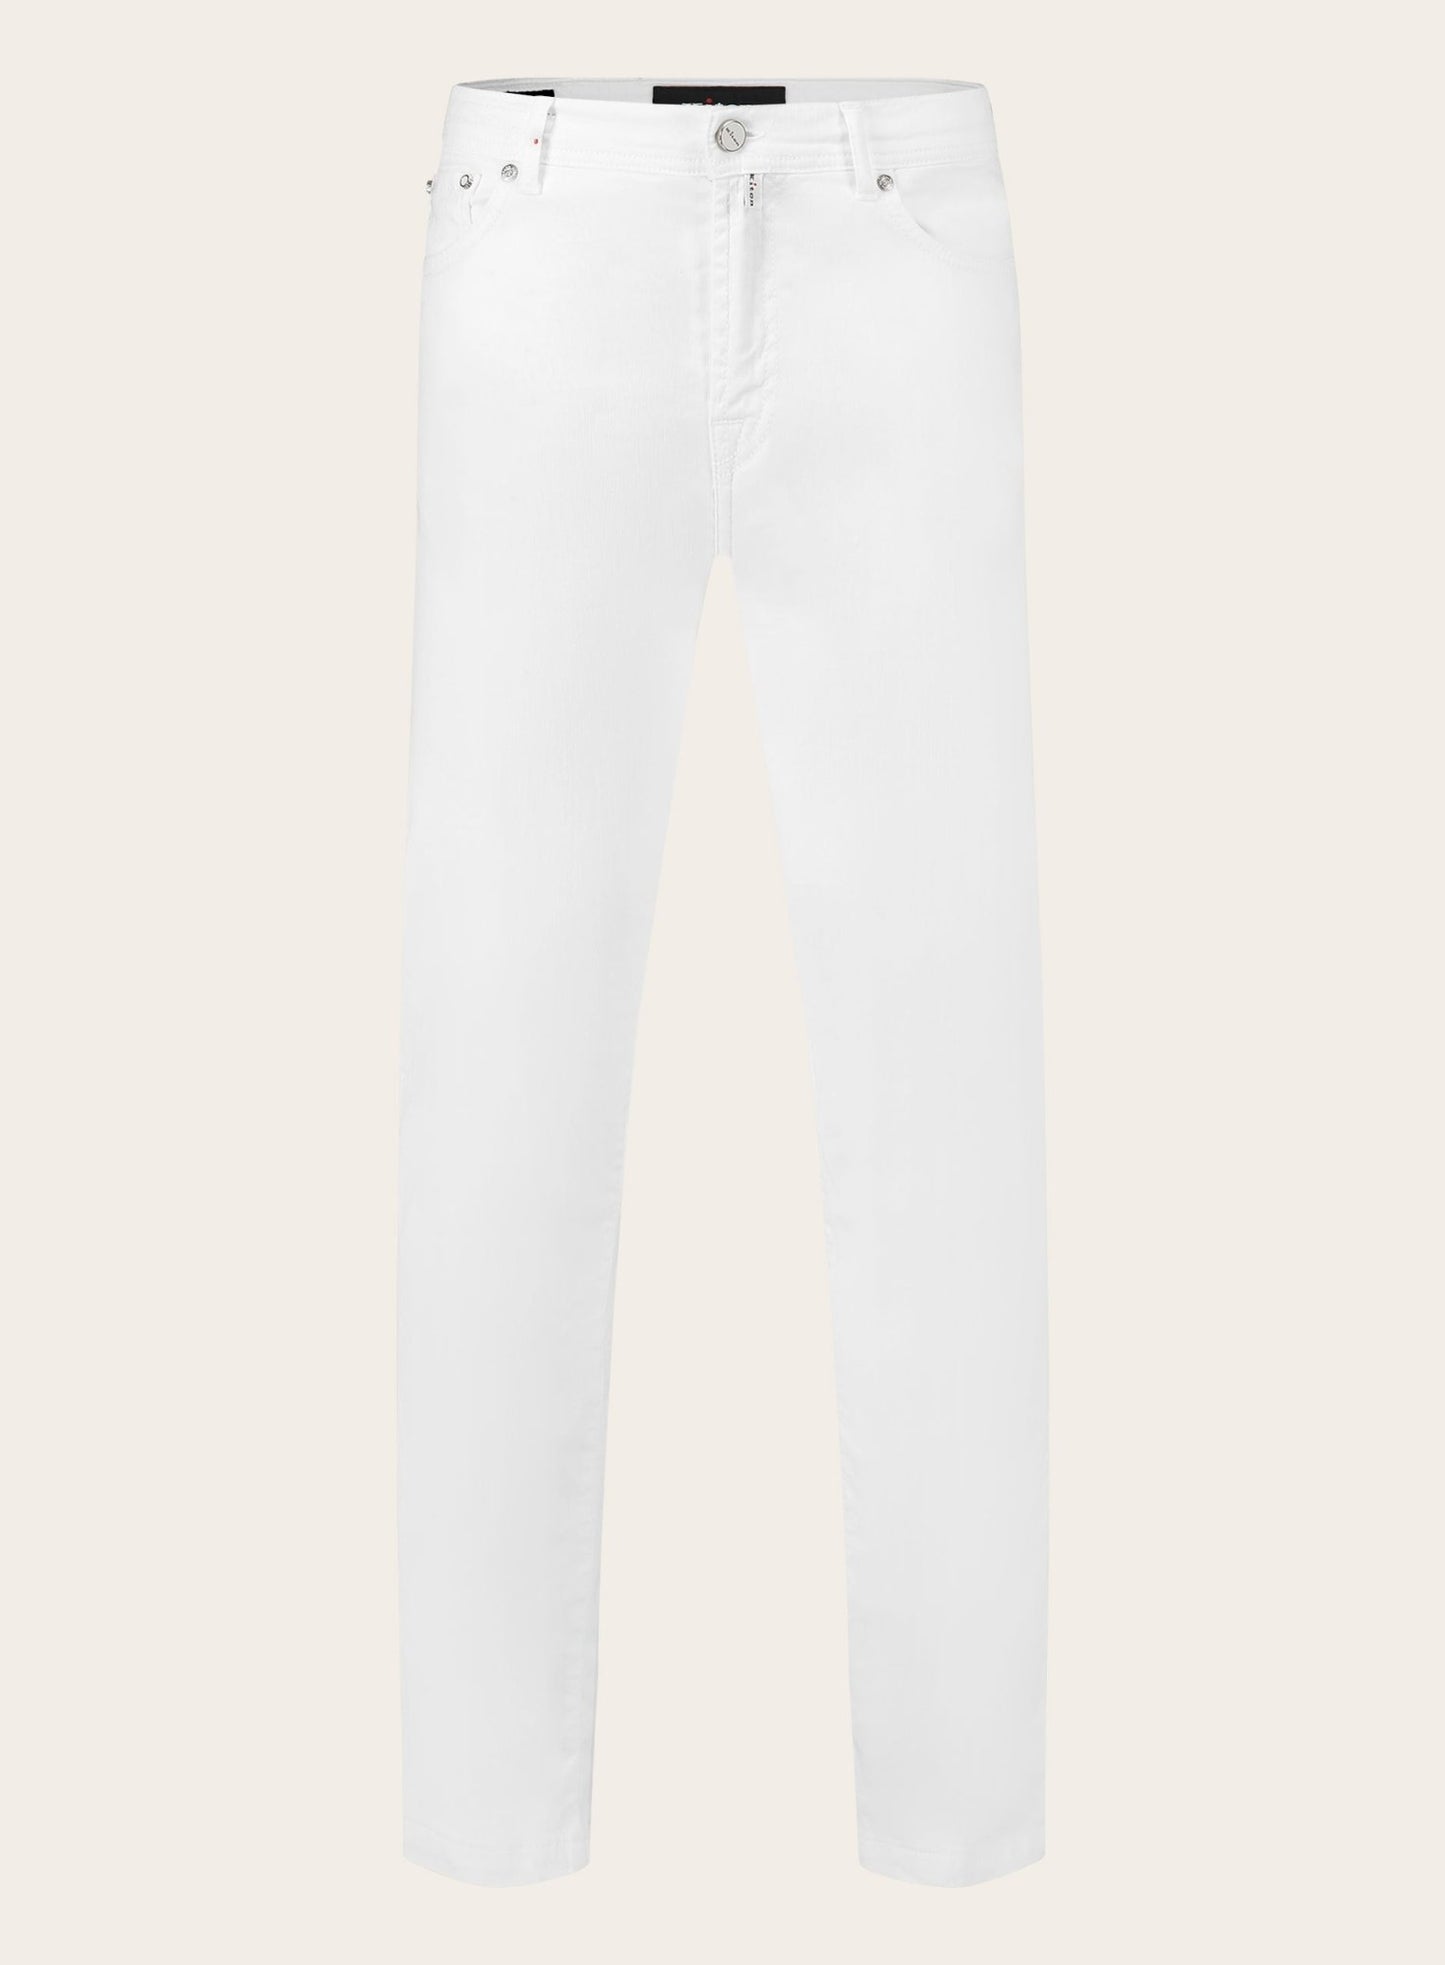 Slim-fit 5-pocket jeans